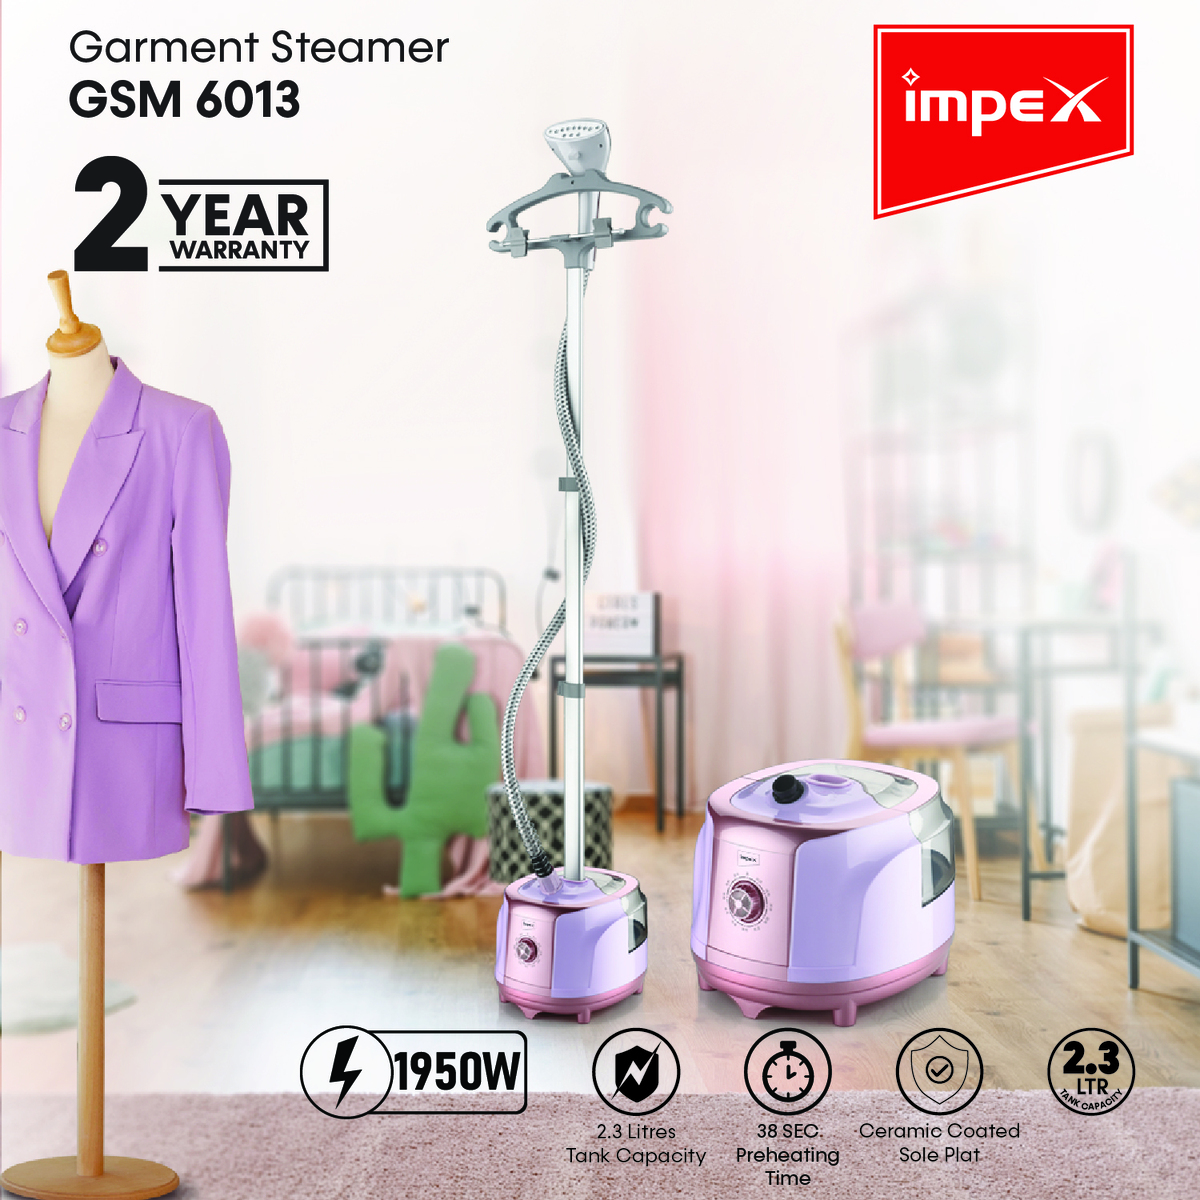 Impex GSM 6013 2.3 Liter 1950 Watts Garment Steamer